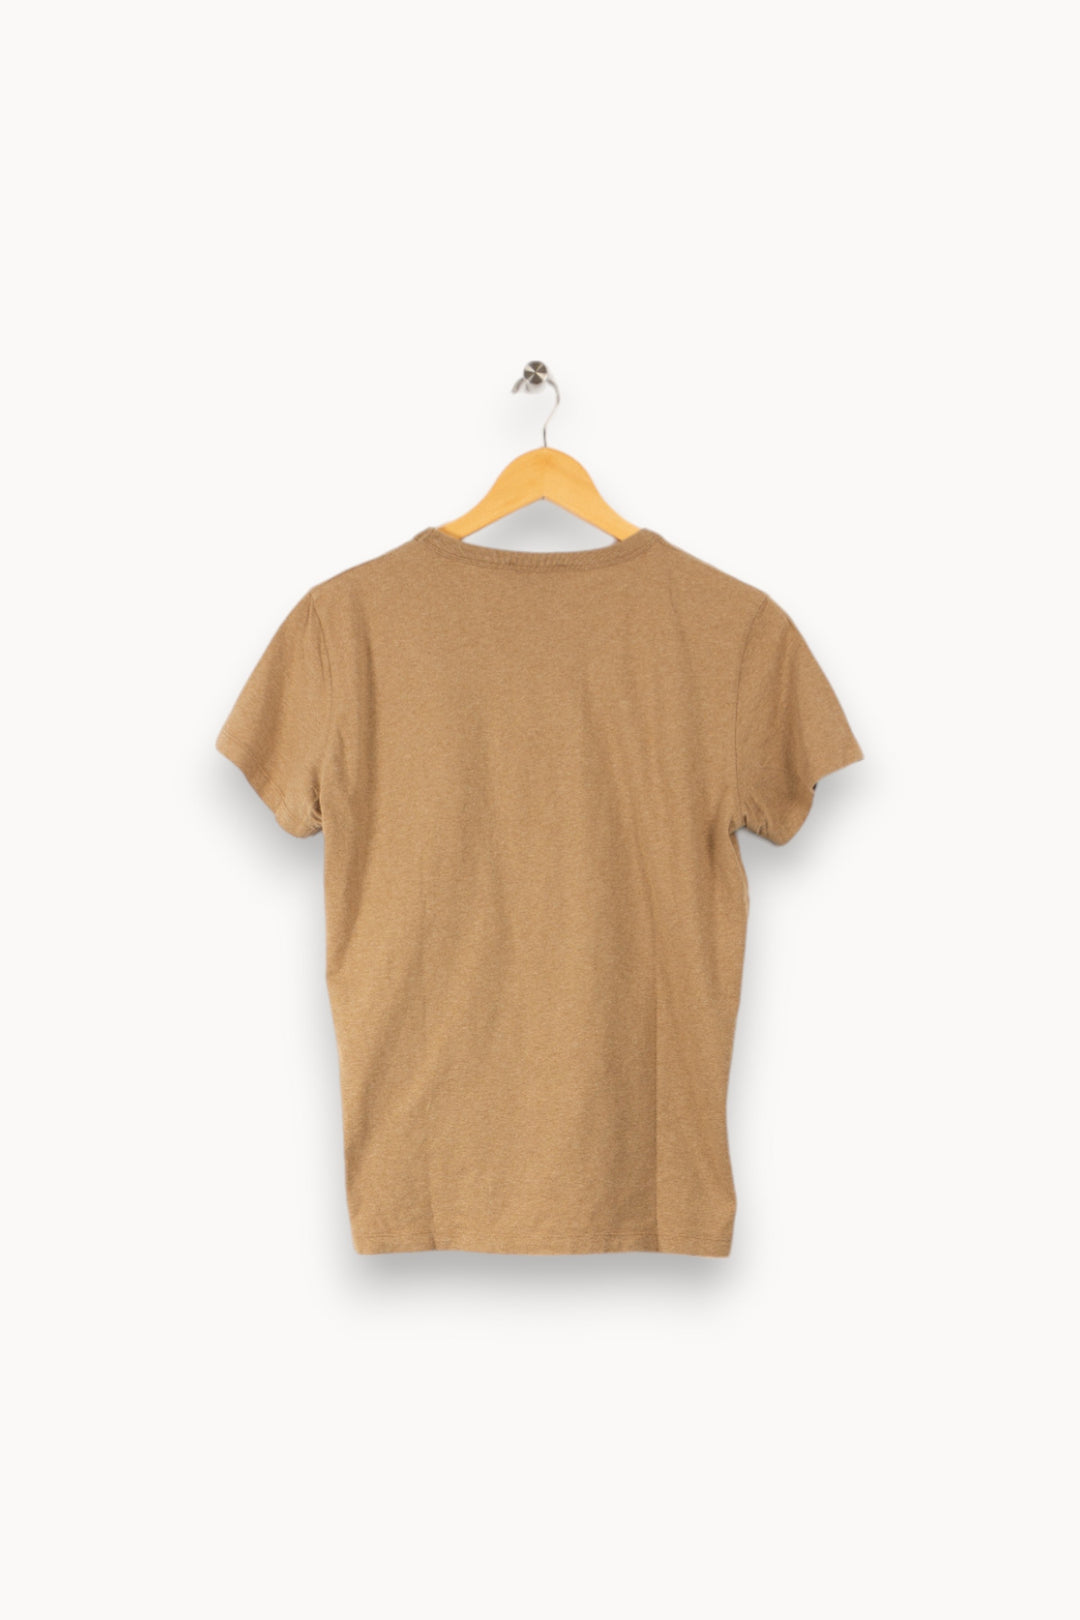 T-shirt beige - L / 40